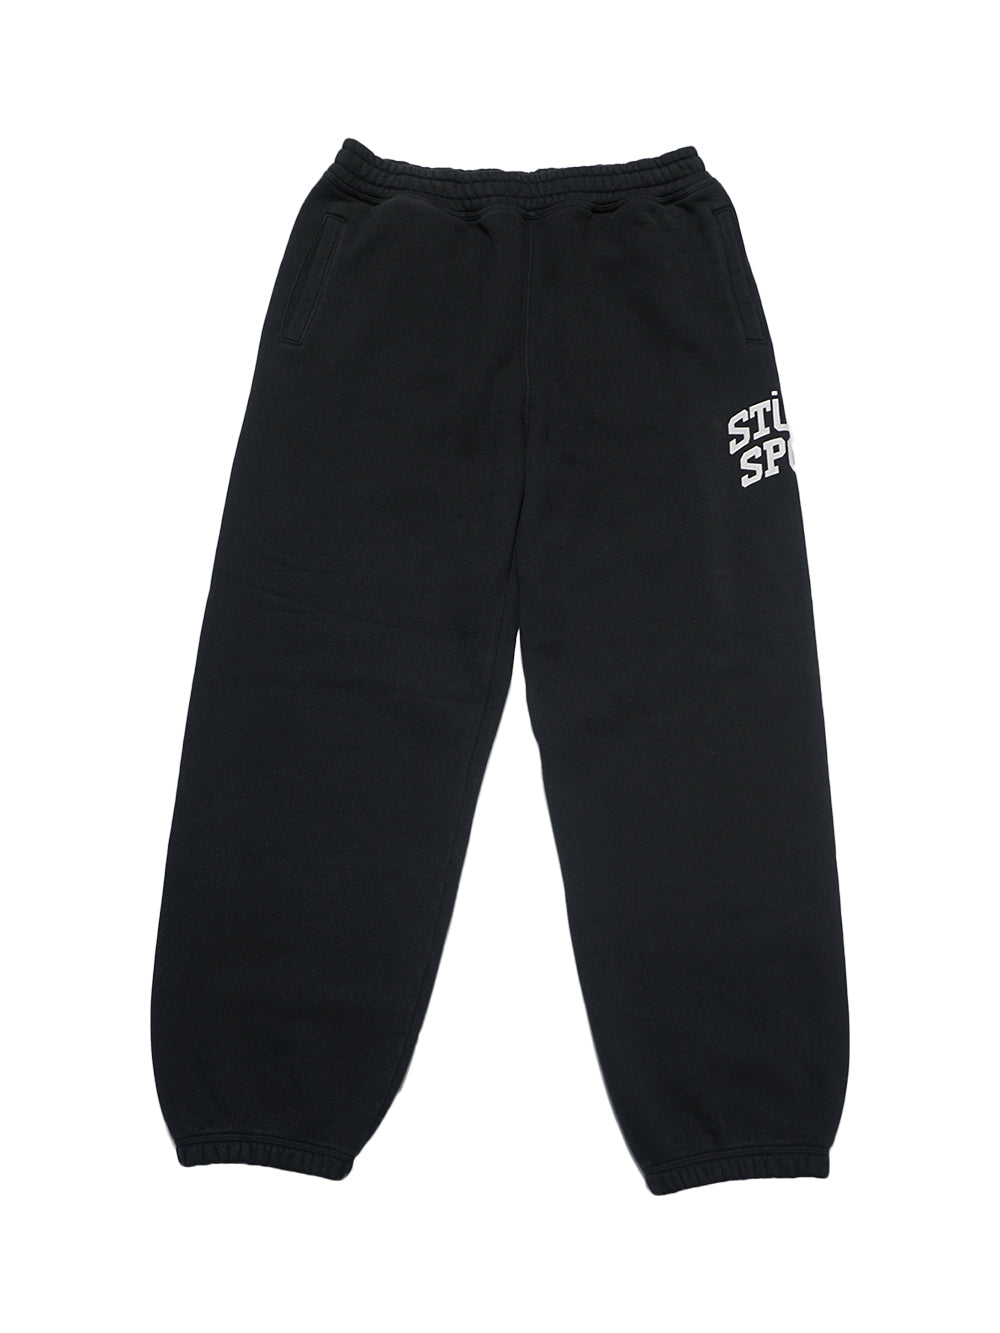 Stussy Fleece Pant Sport Crackle - Washed Black